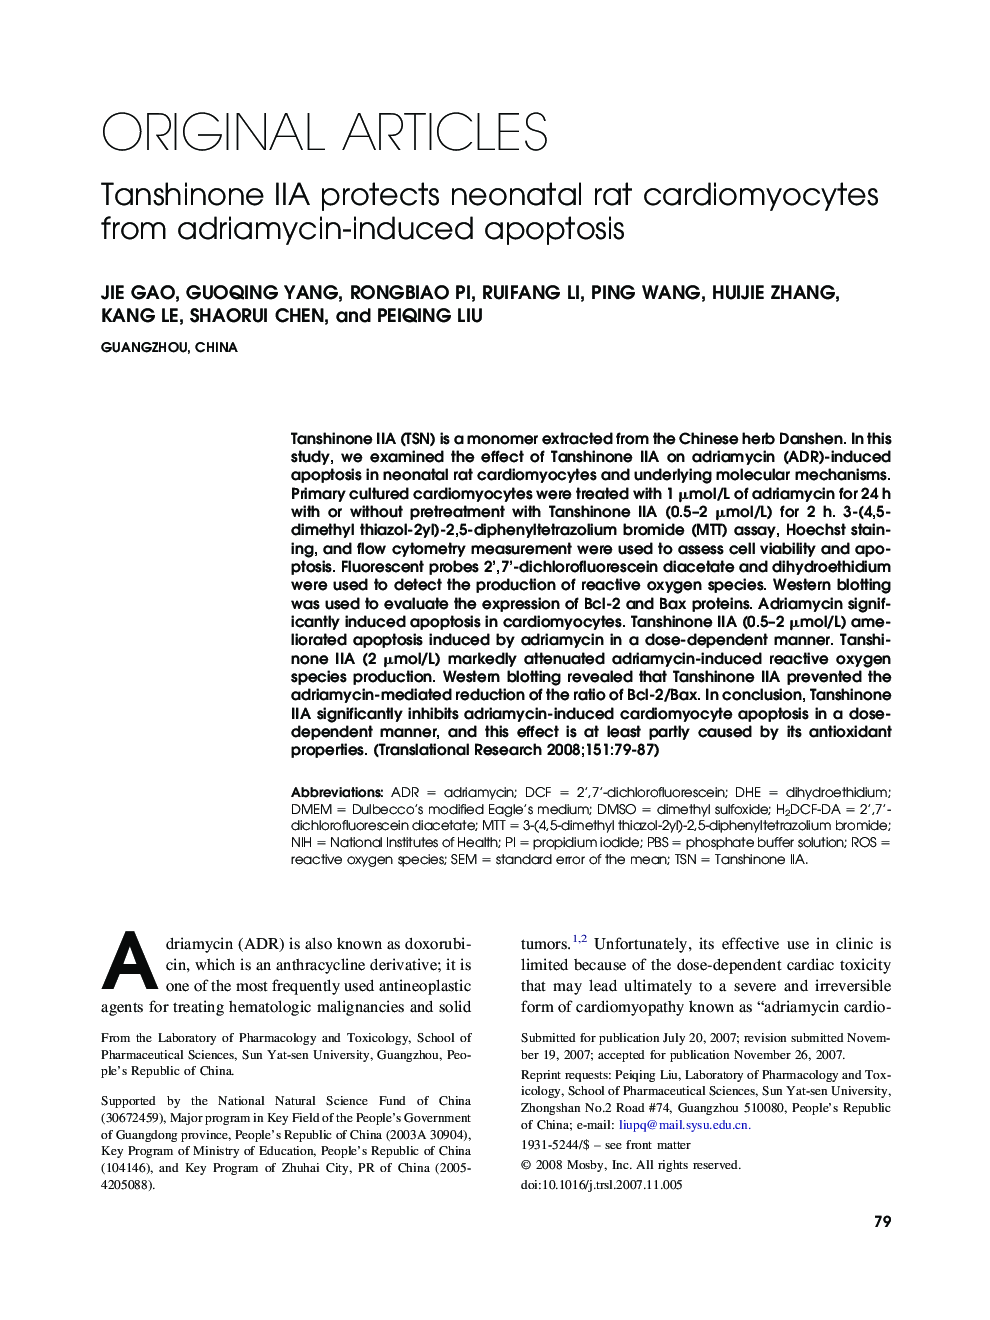 Tanshinone IIA protects neonatal rat cardiomyocytes from adriamycin-induced apoptosis 